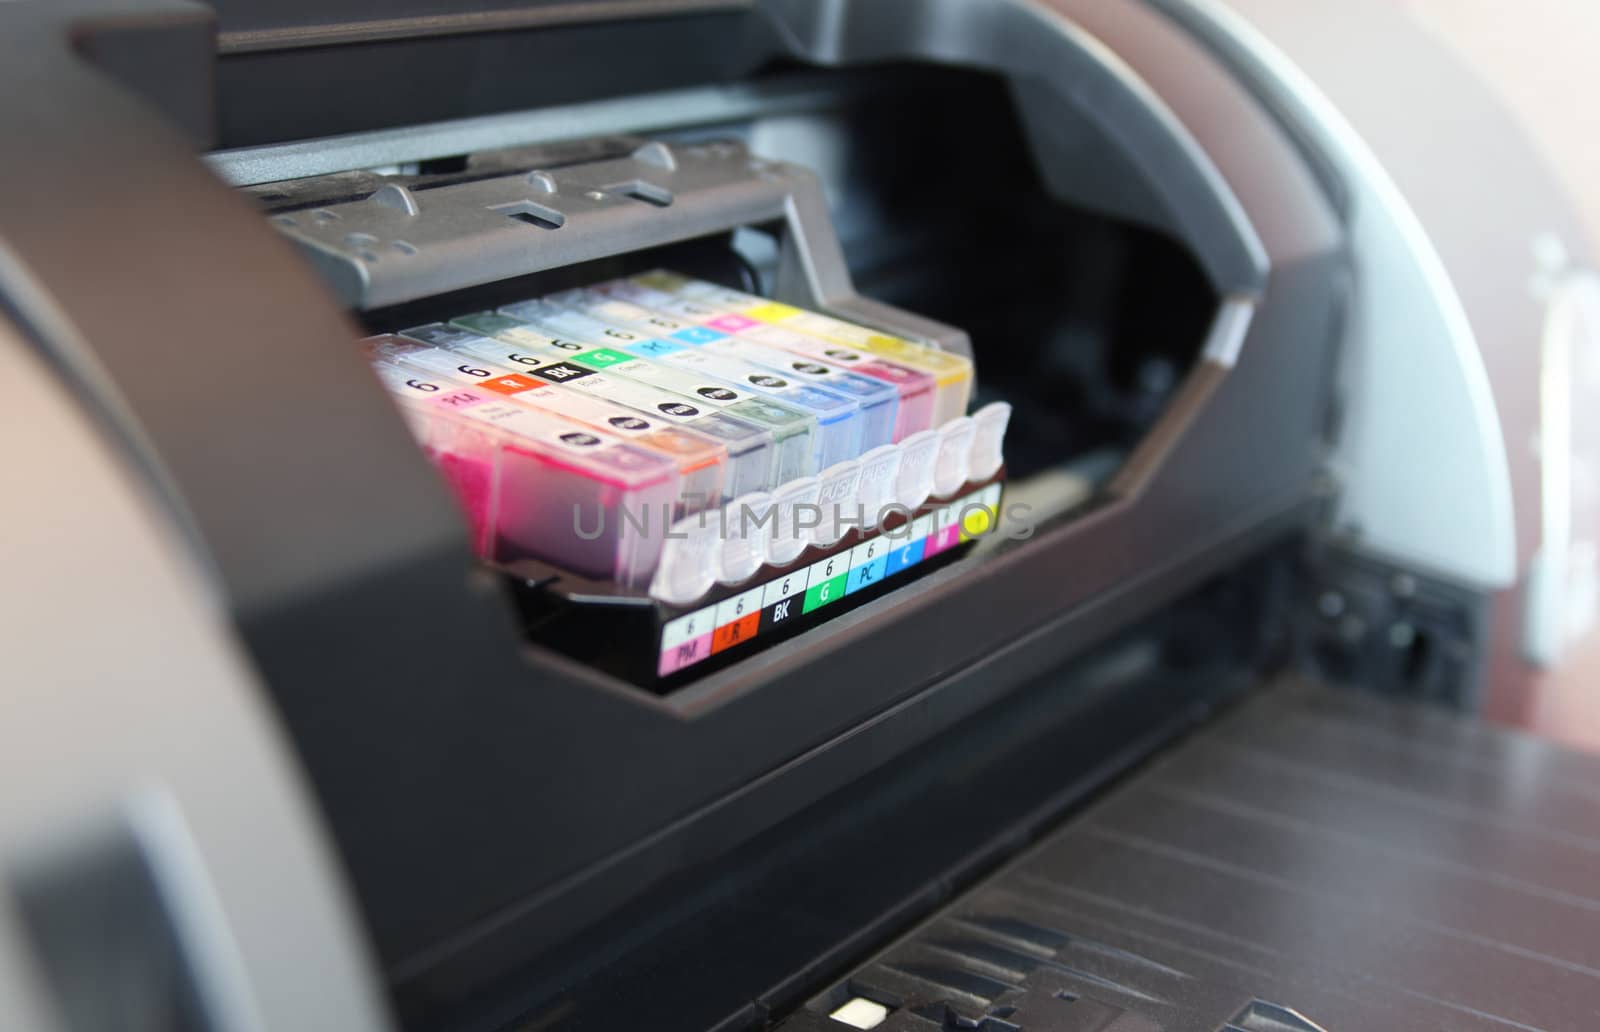 inkjet printer close up by photosoup